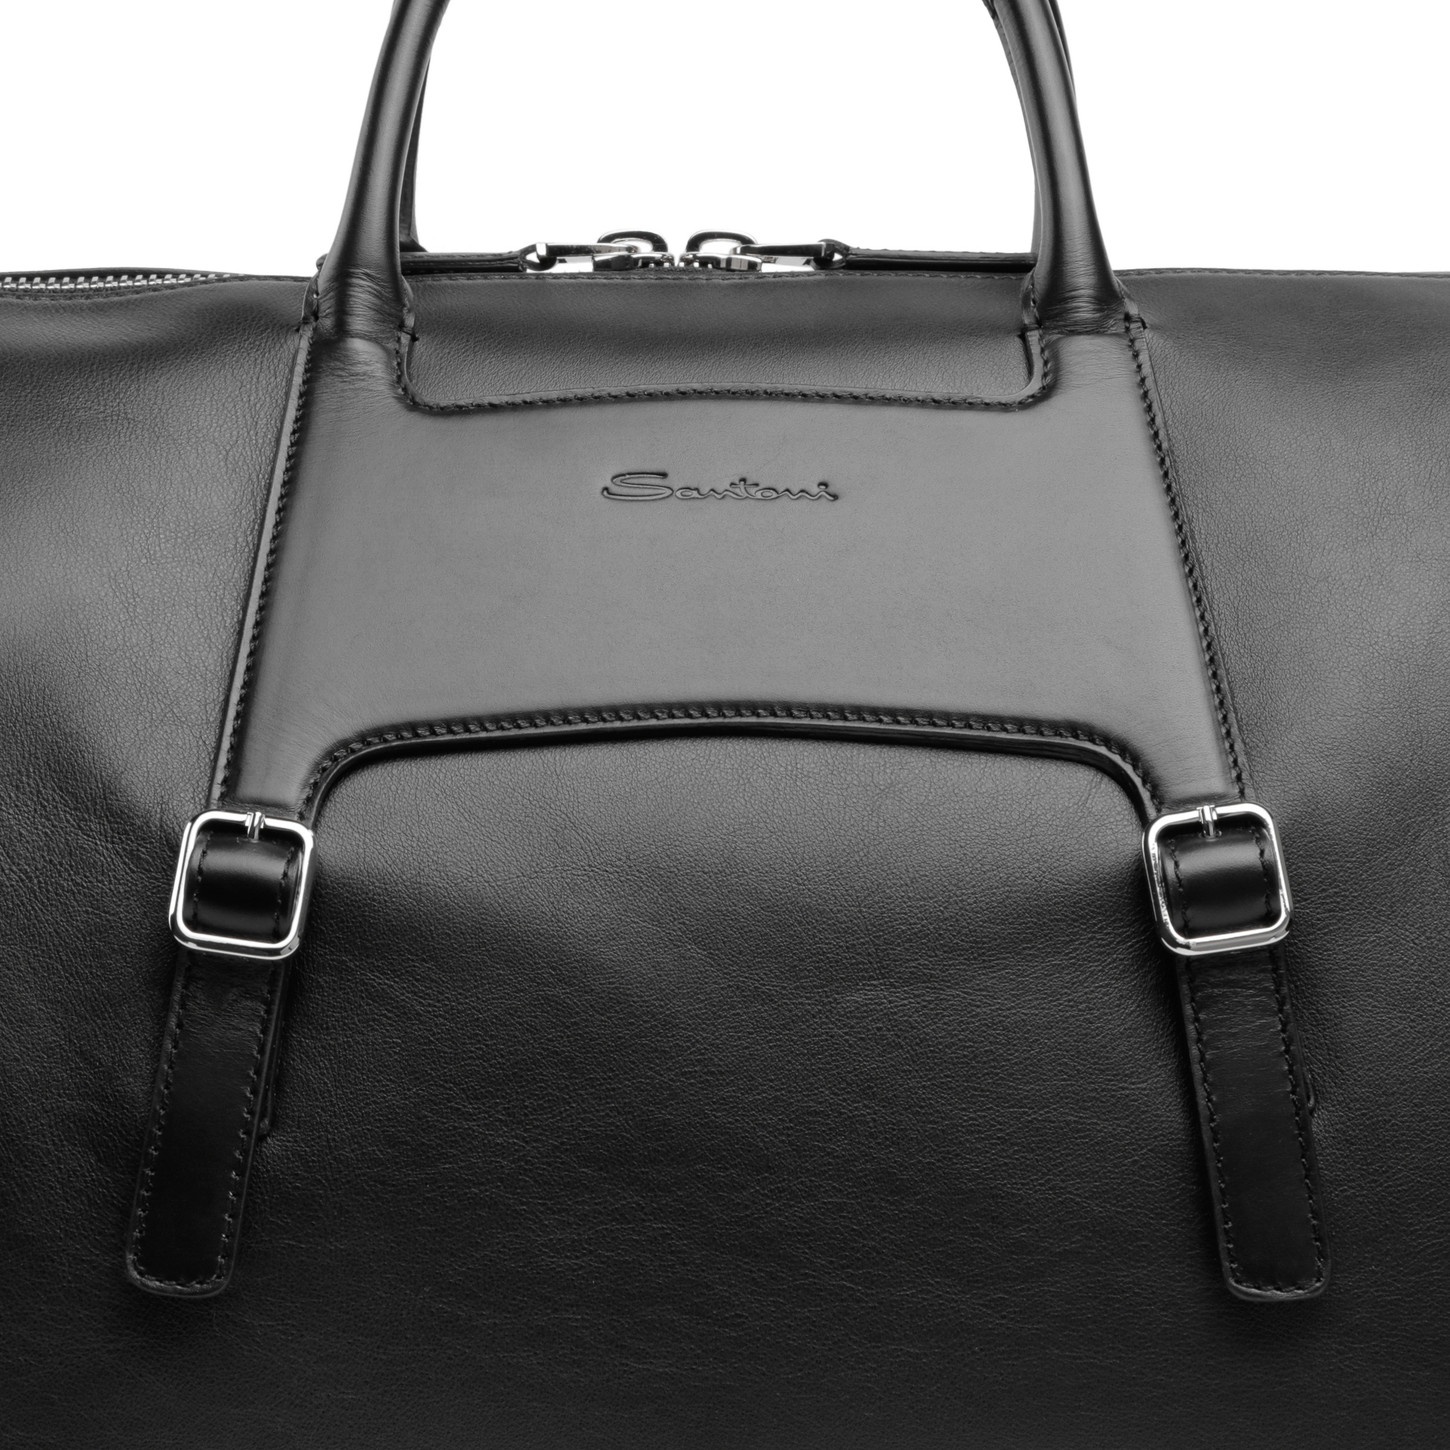 Black leather weekend bag - 6